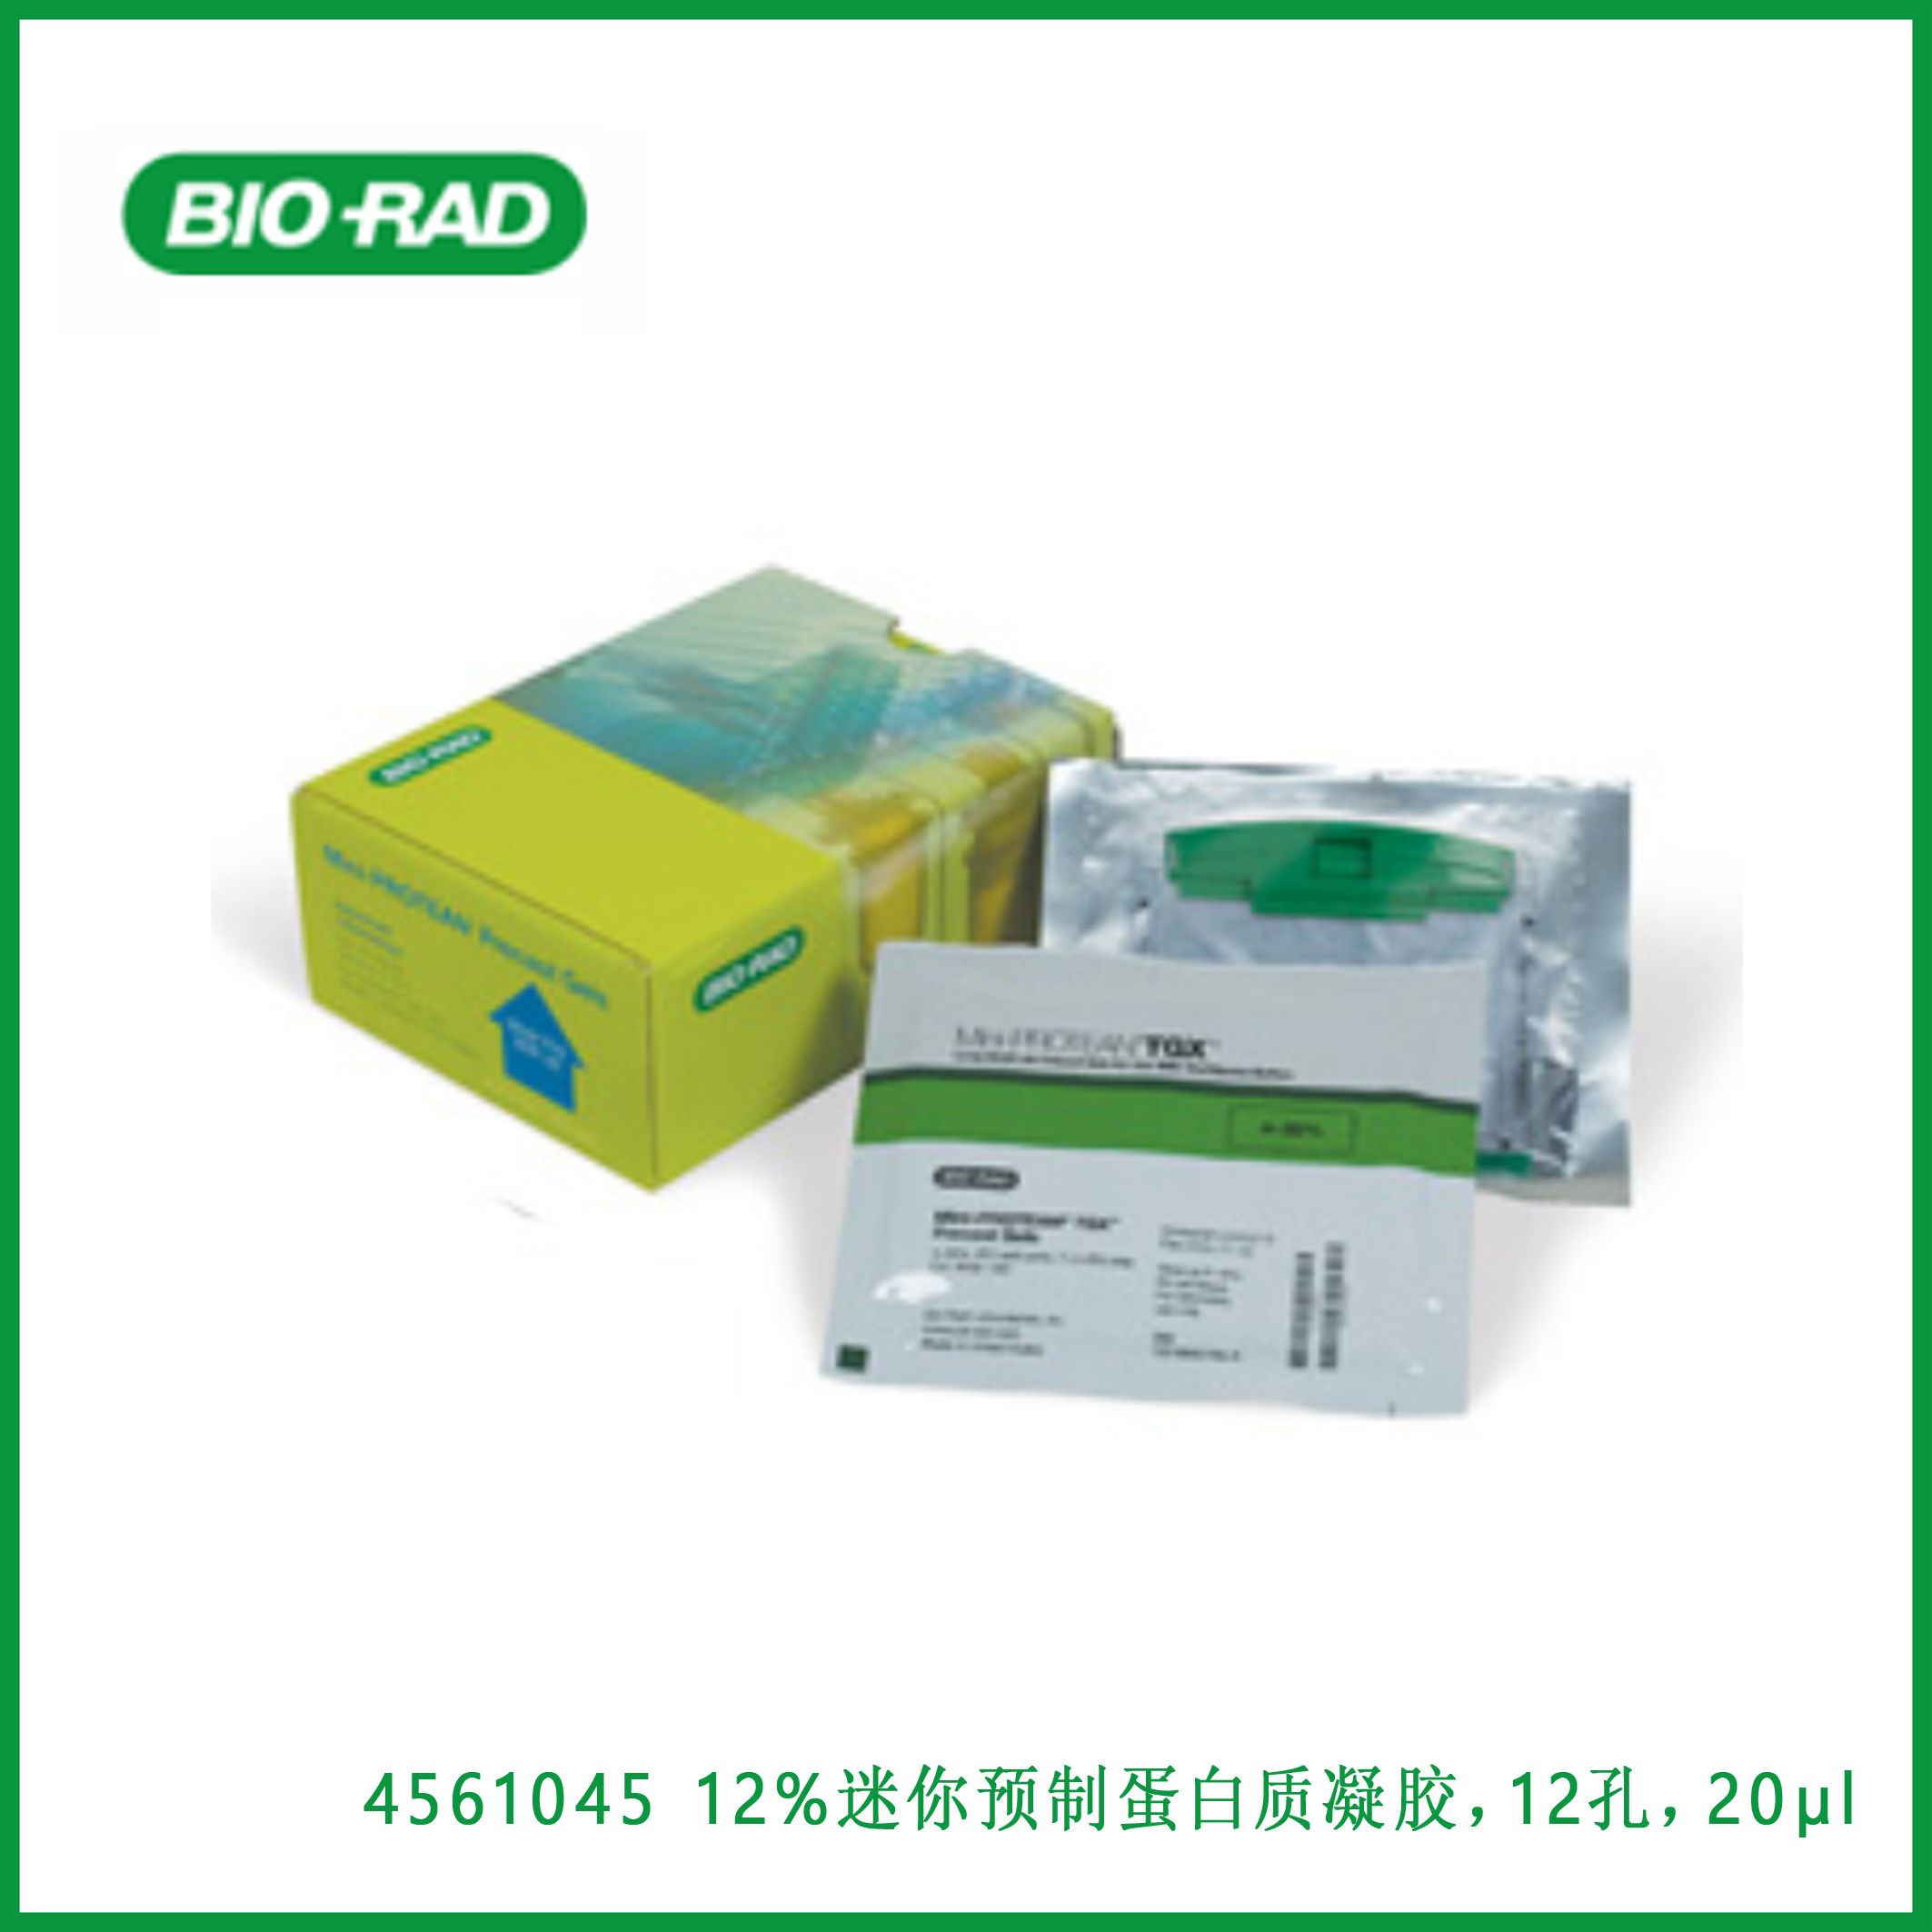 伯乐Bio-Rad456104512% Mini-PROTEAN® TGX™ Precast Protein Gels, 12-well, 20 µl，12%迷你PROTEAN®TGX™ 预制蛋白质凝胶，12孔，20µl，现货